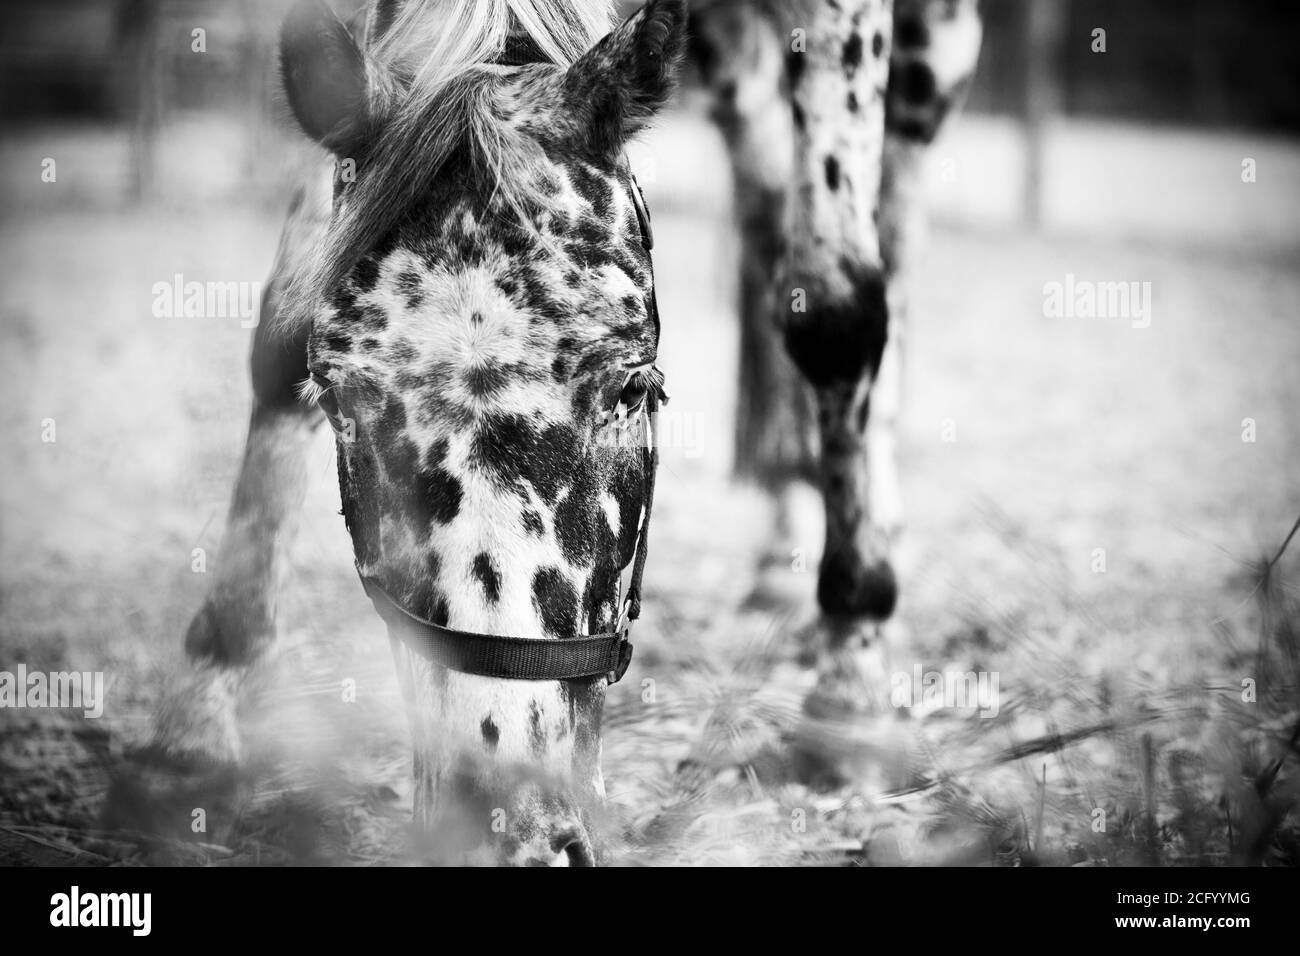 Schwarz-weißes Porträt eines schönen gefleckten Pferdes mit einem Halfter an der Schnauze, das Gras frisst und mit Interesse aussieht. Das Pferd weidet. Stockfoto